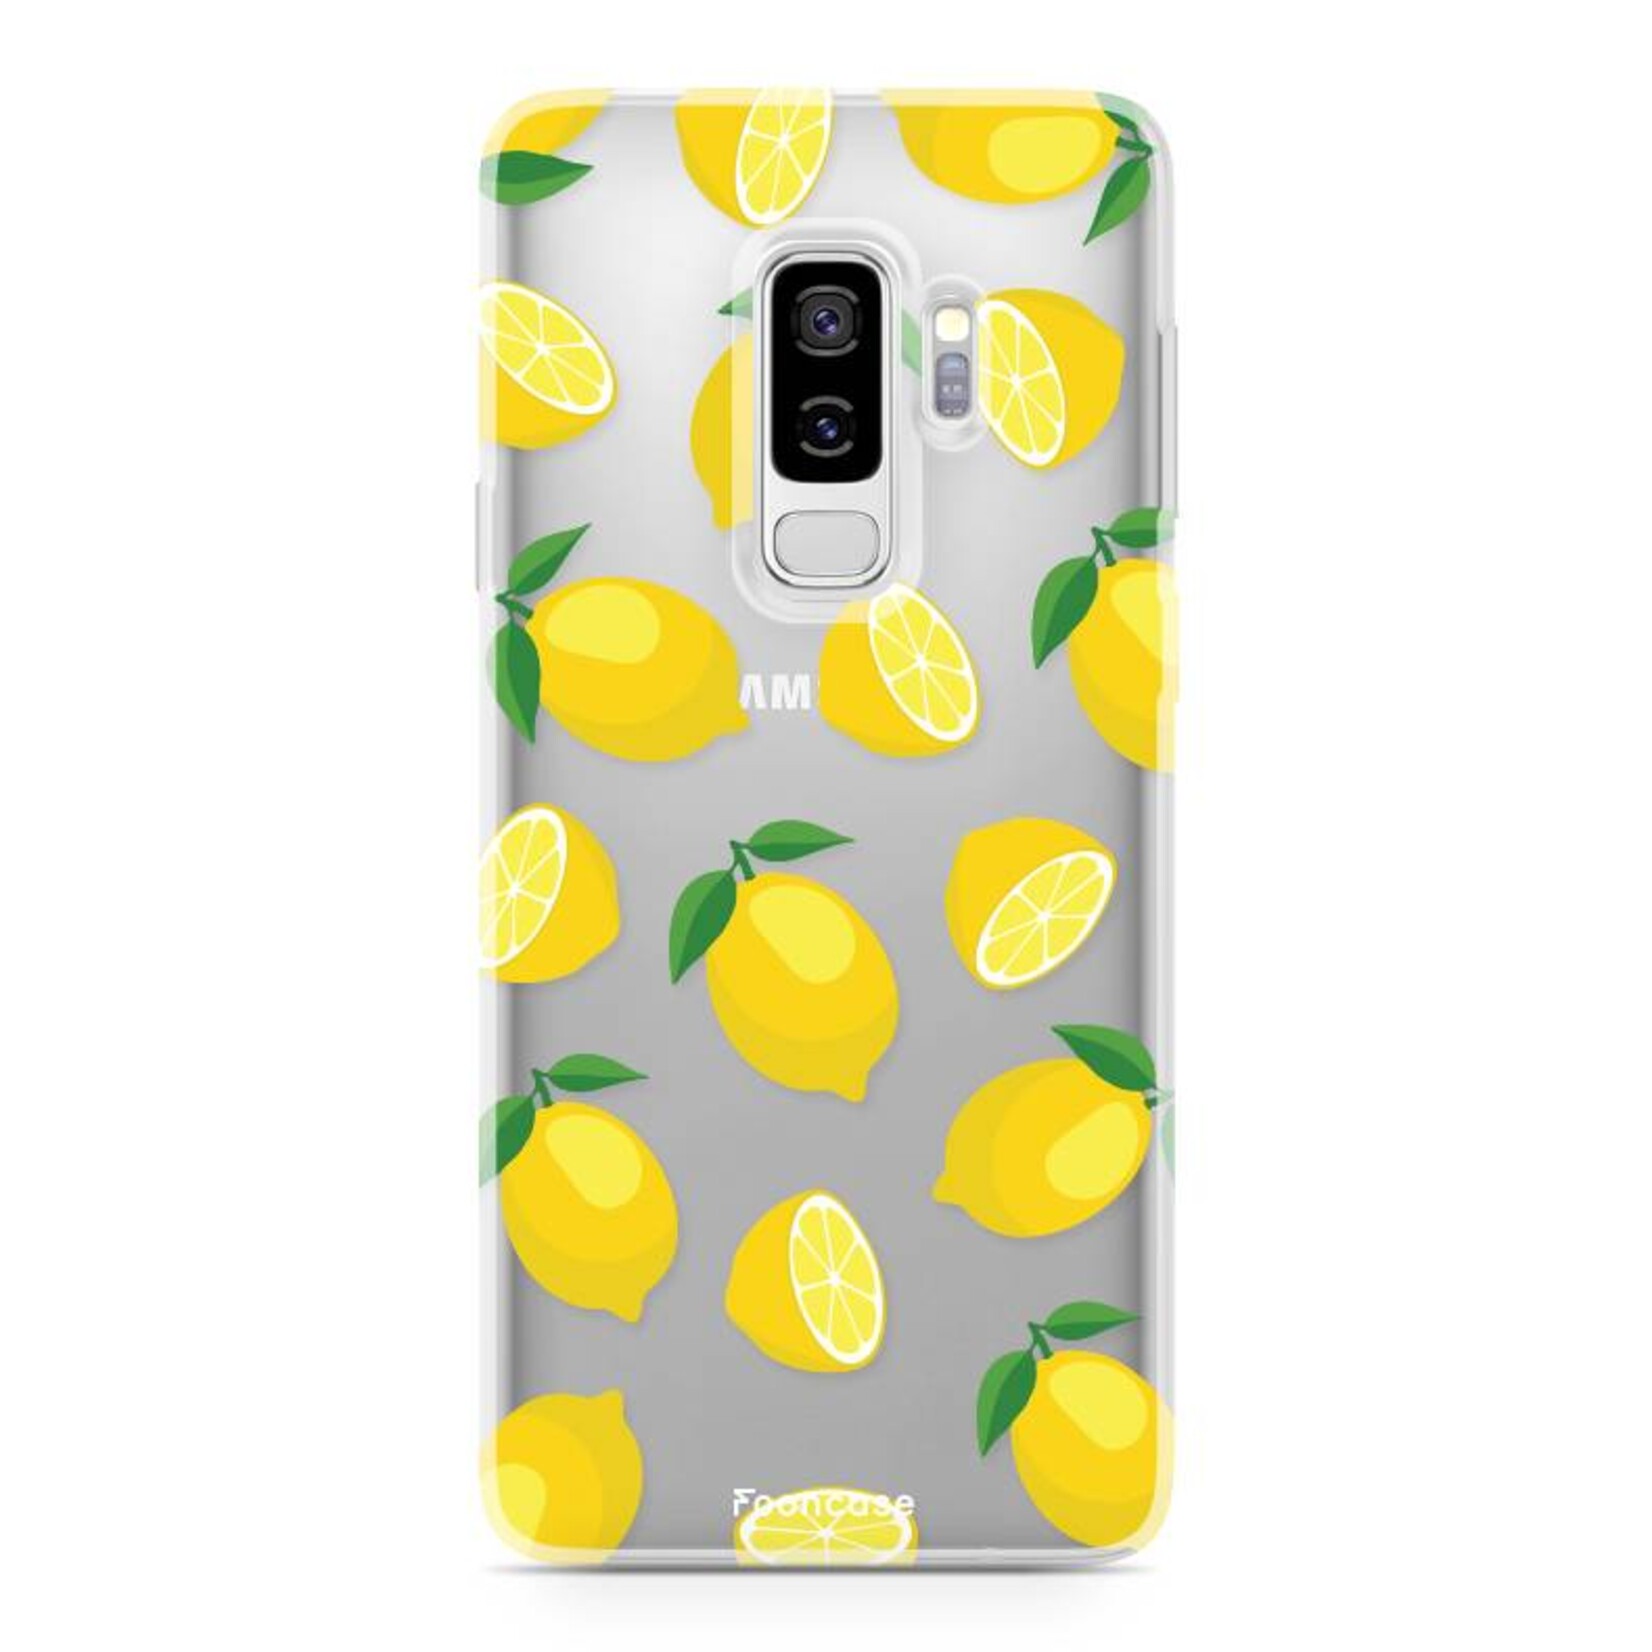 FOONCASE Samsung Galaxy S9 Plus Cover -Lemons